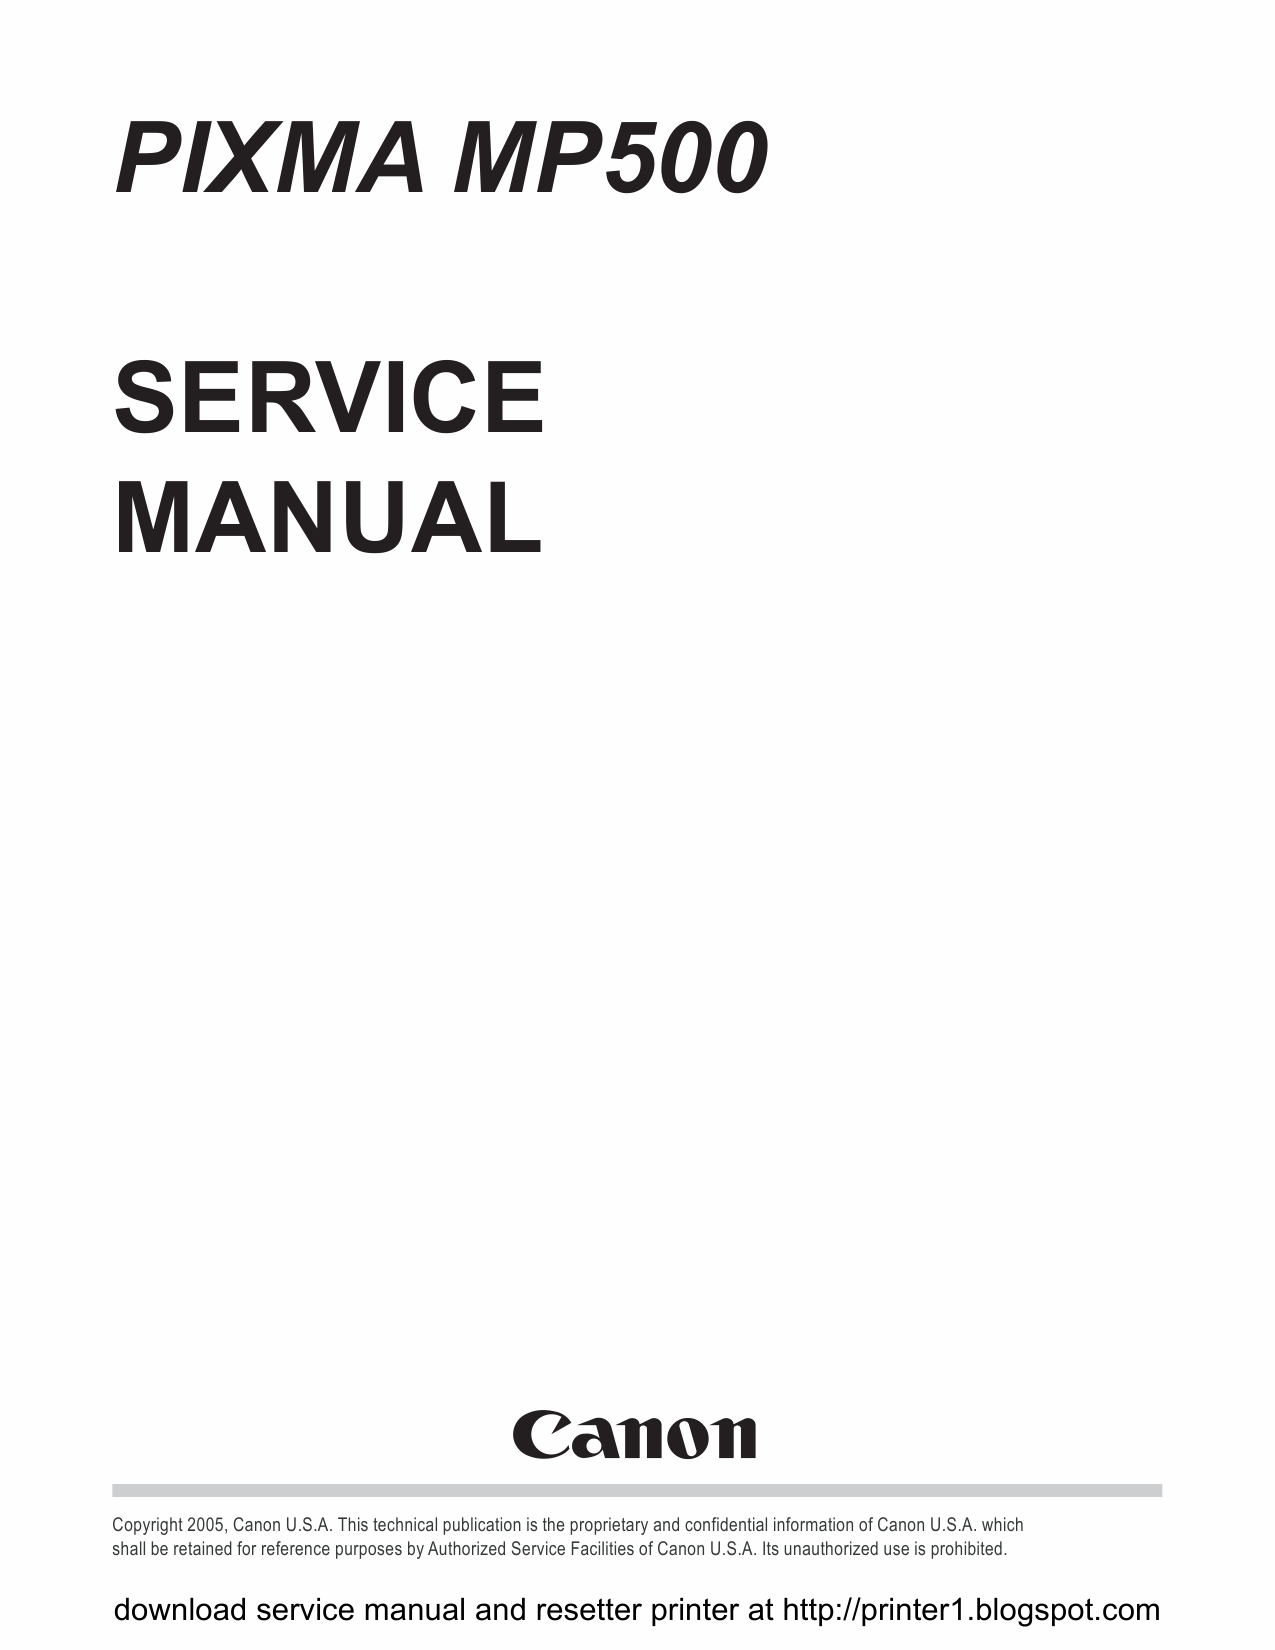 Canon PIXMA MP500 Service Manual-1